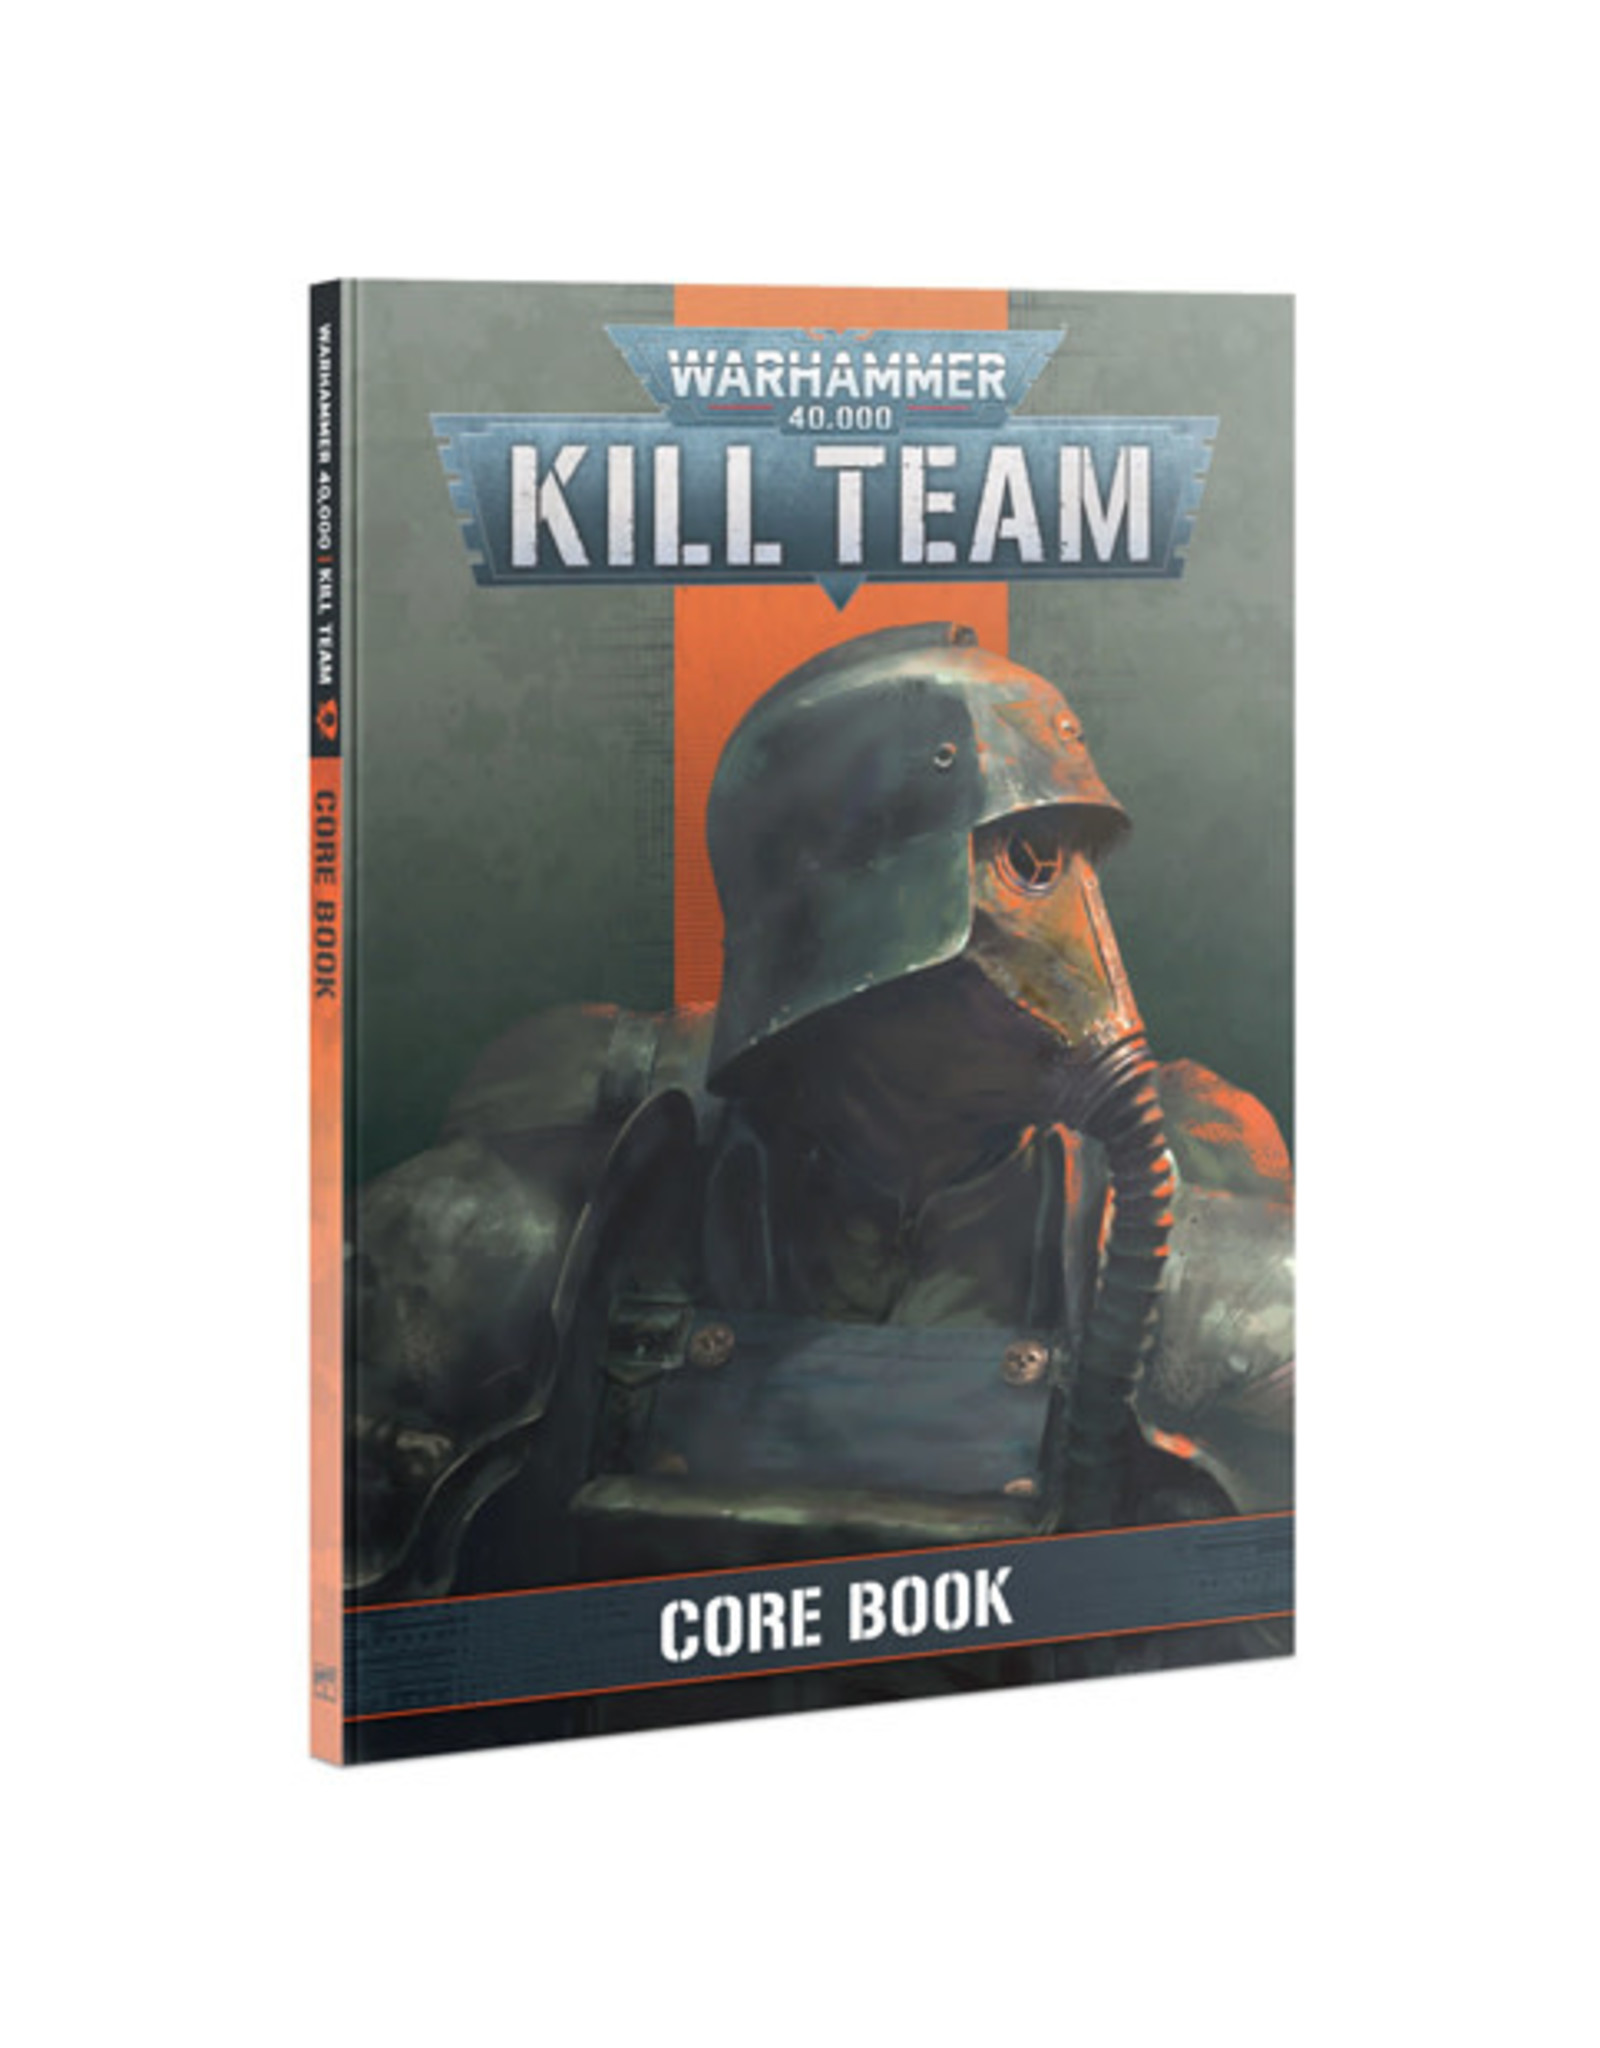 Kill Team Core Book